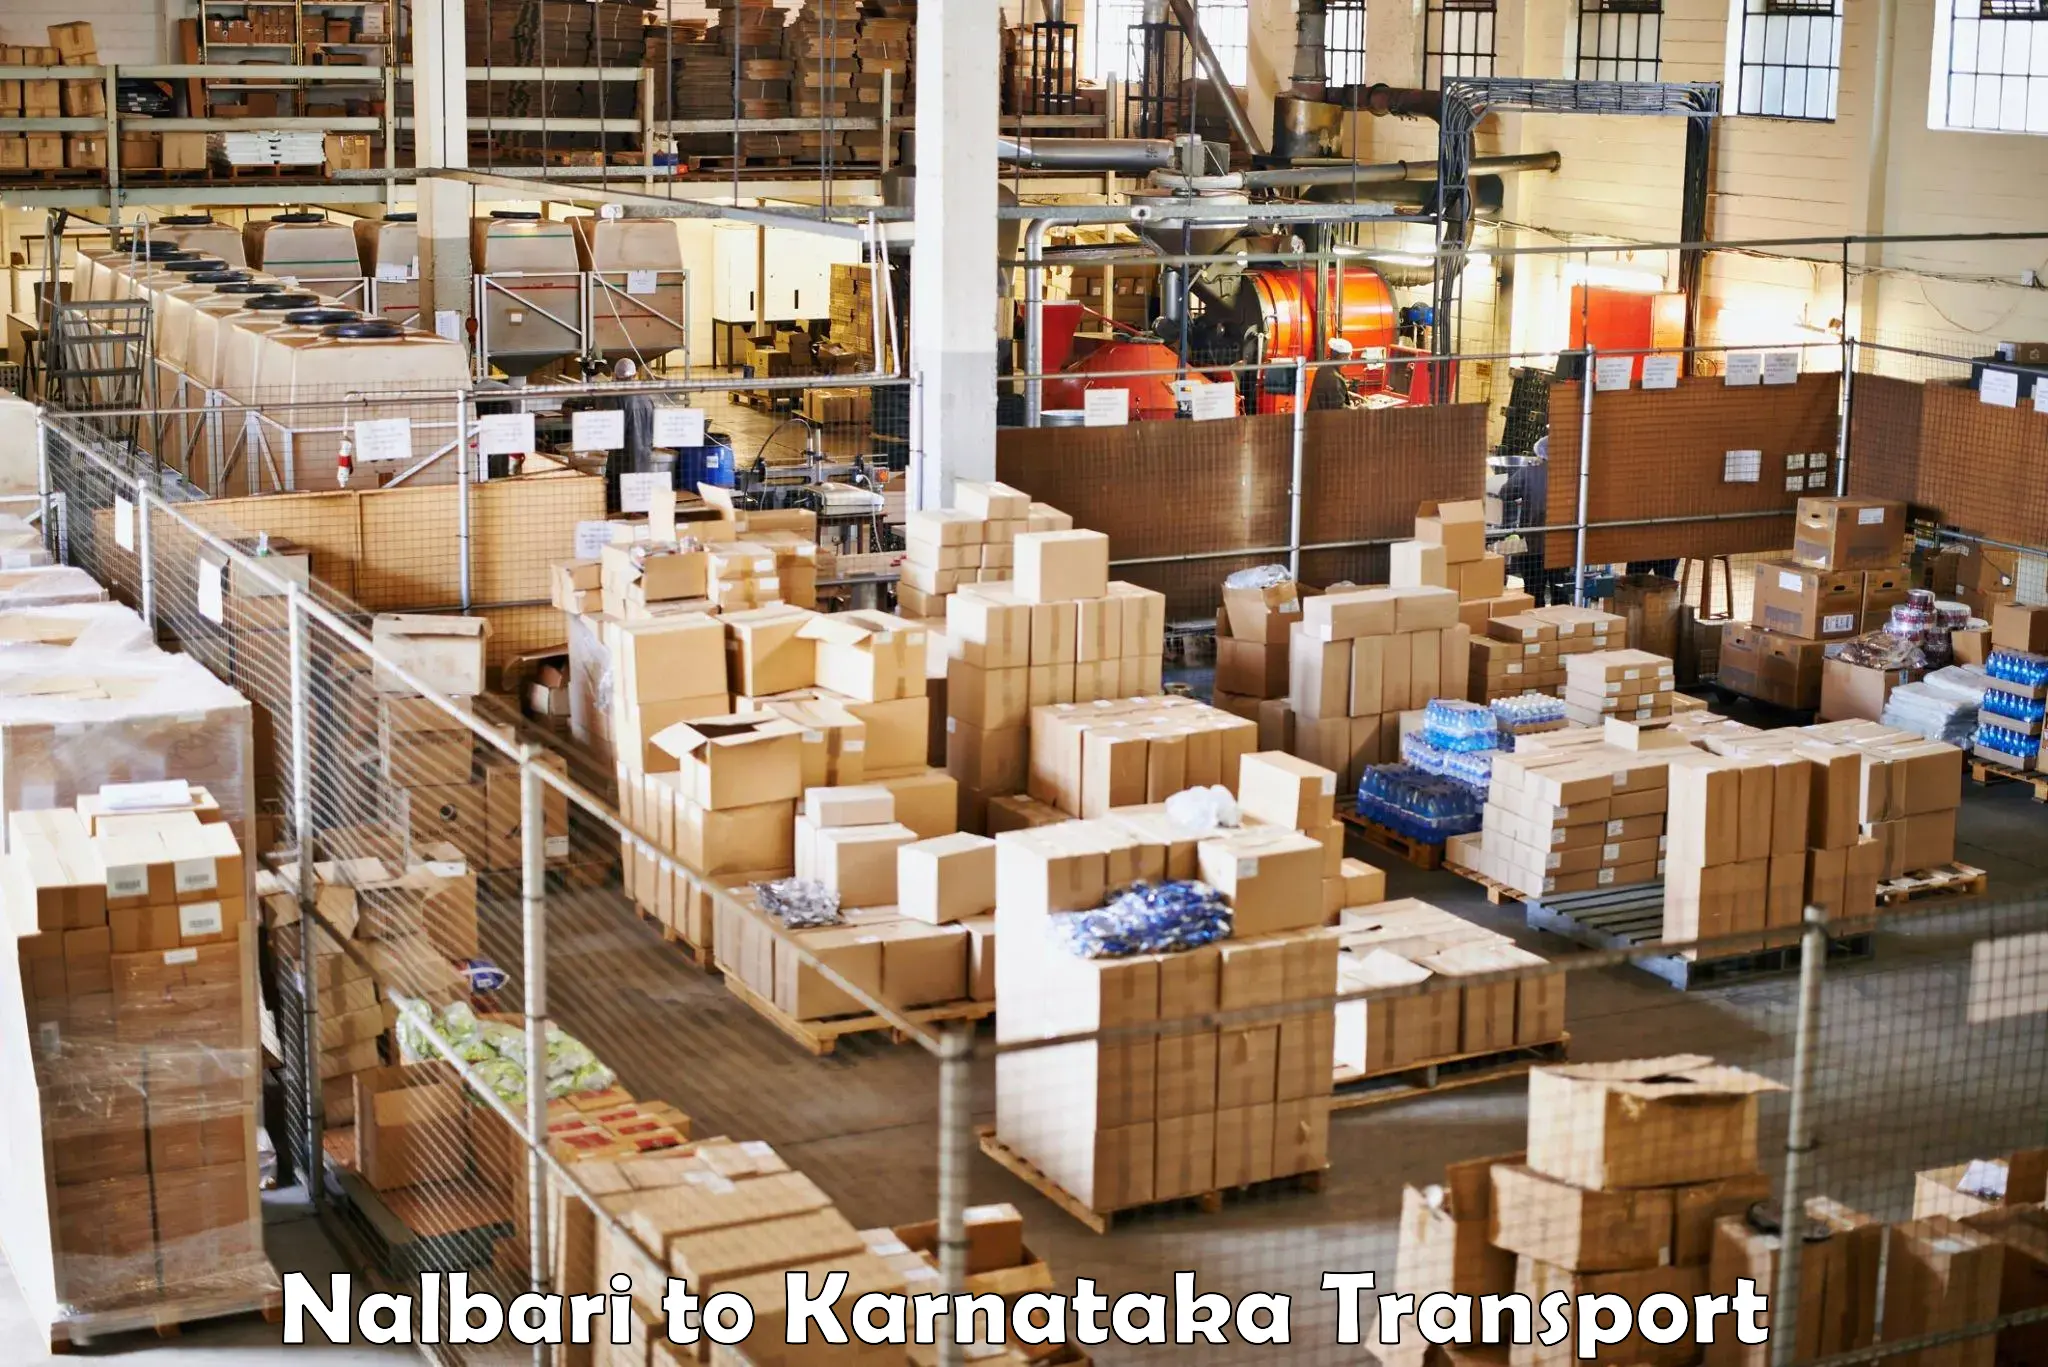 Truck transport companies in India Nalbari to Uchila